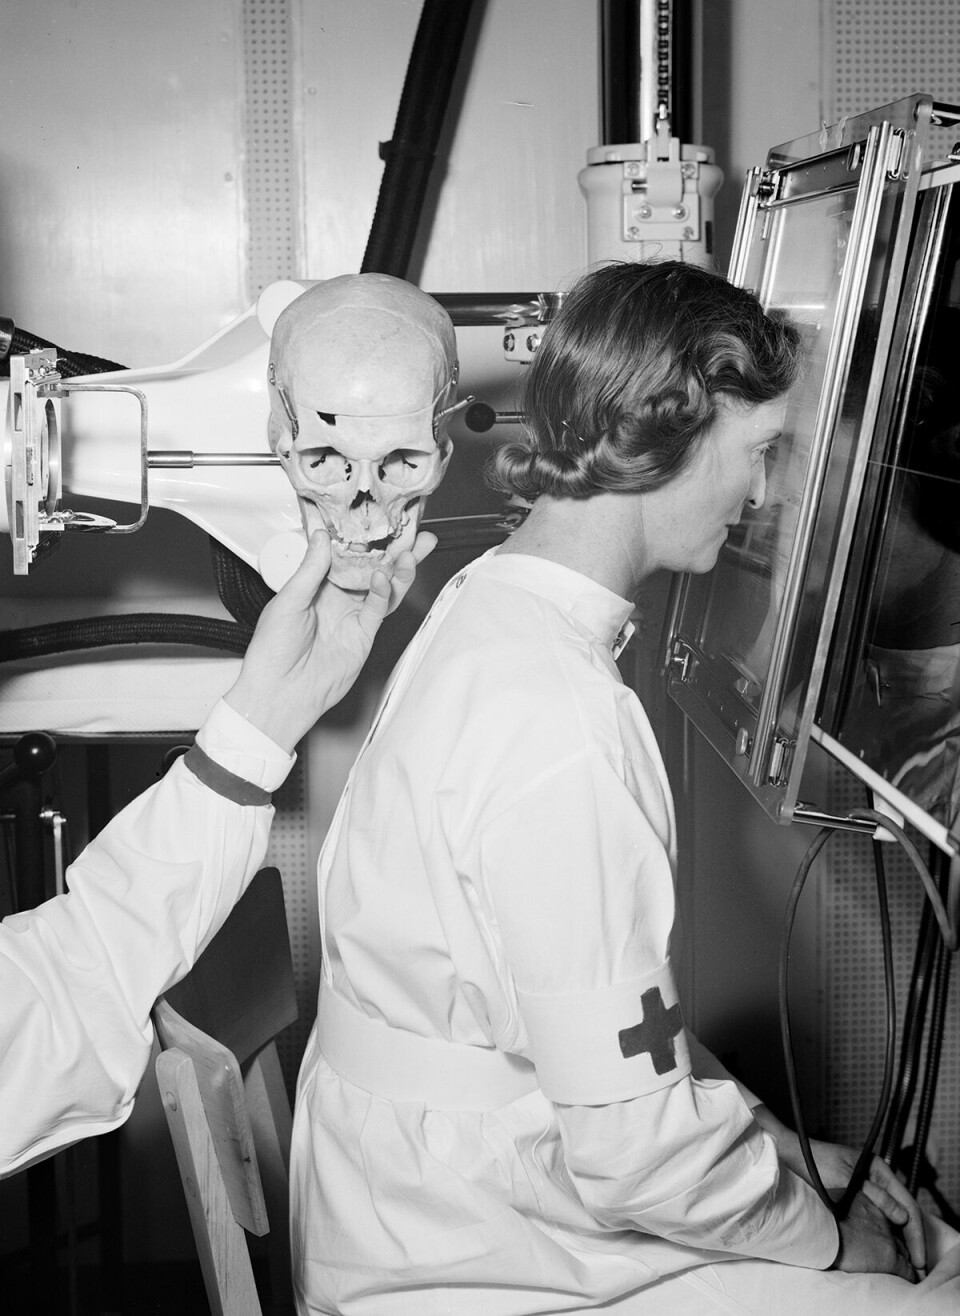 Fra en bildeserie fra 1939 som med enkle midler viser plassering av pasient og røntgenkameraets synsvinkel i samme bilde. En Røde Kors-søster har stilt opp som modell.